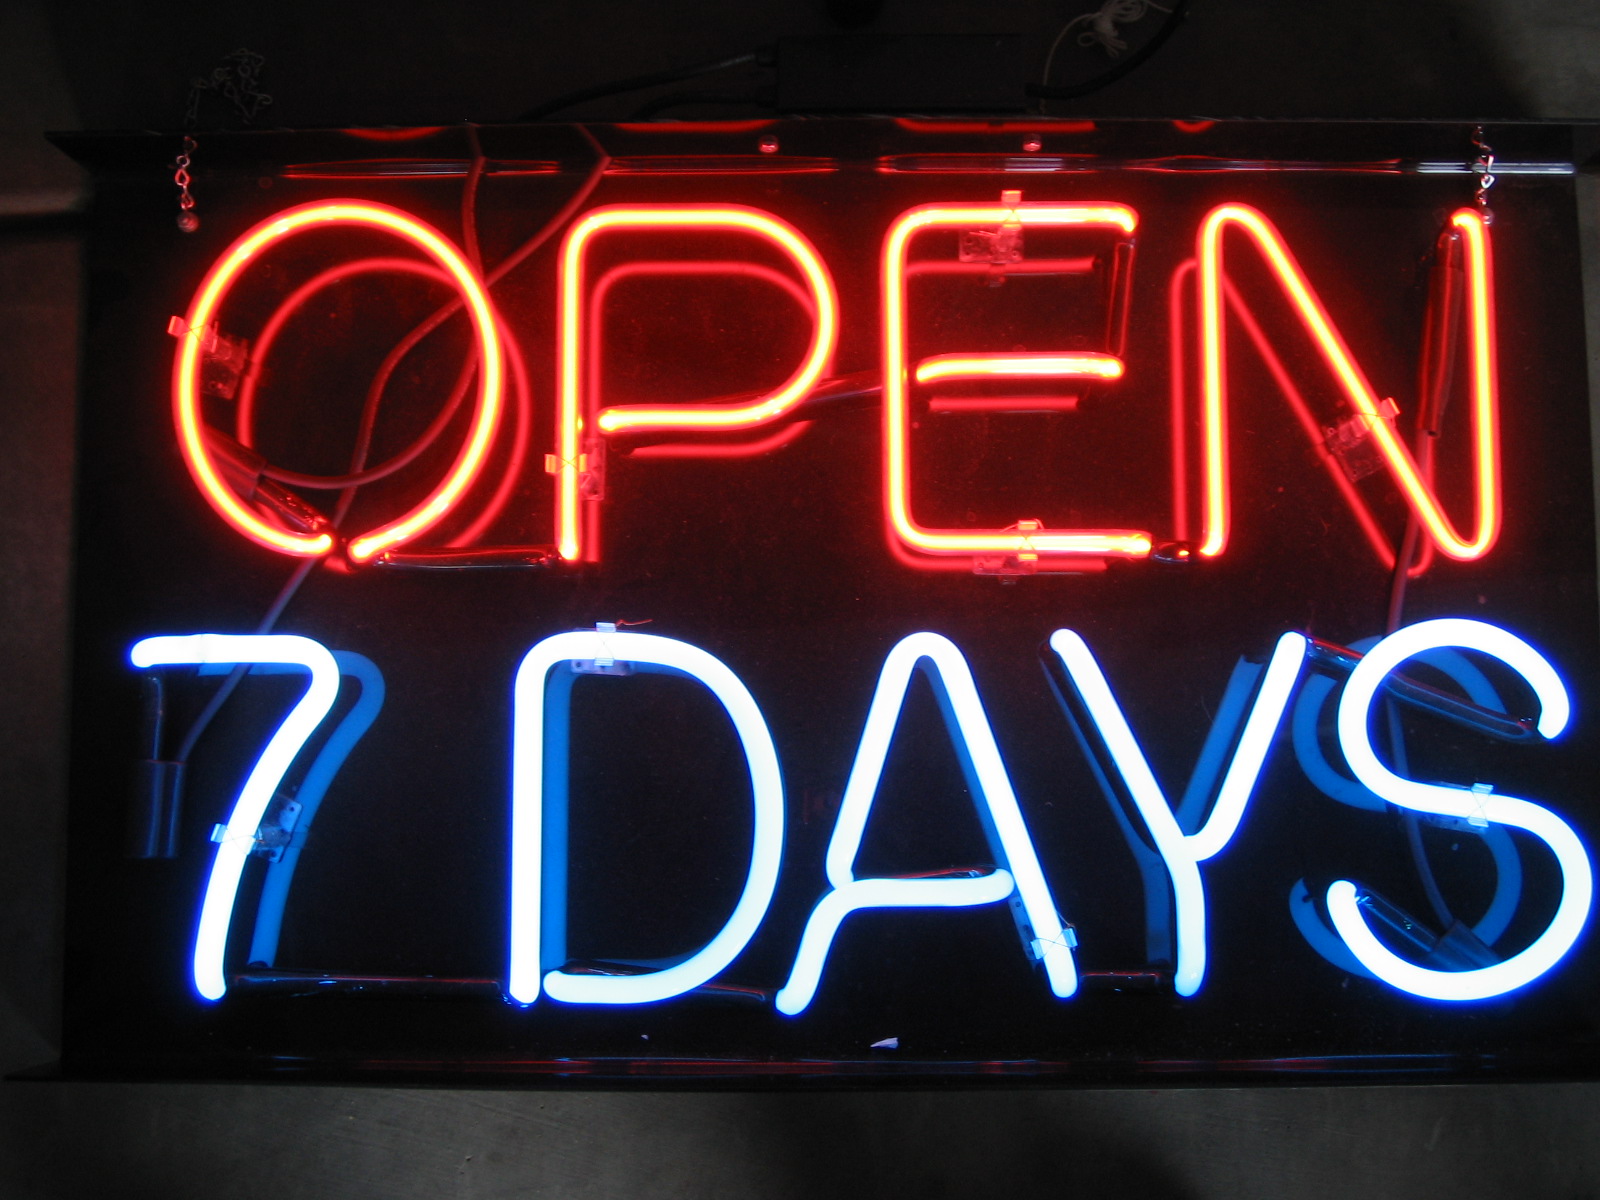 Open 7 Days Neon Sign - HD Wallpaper 